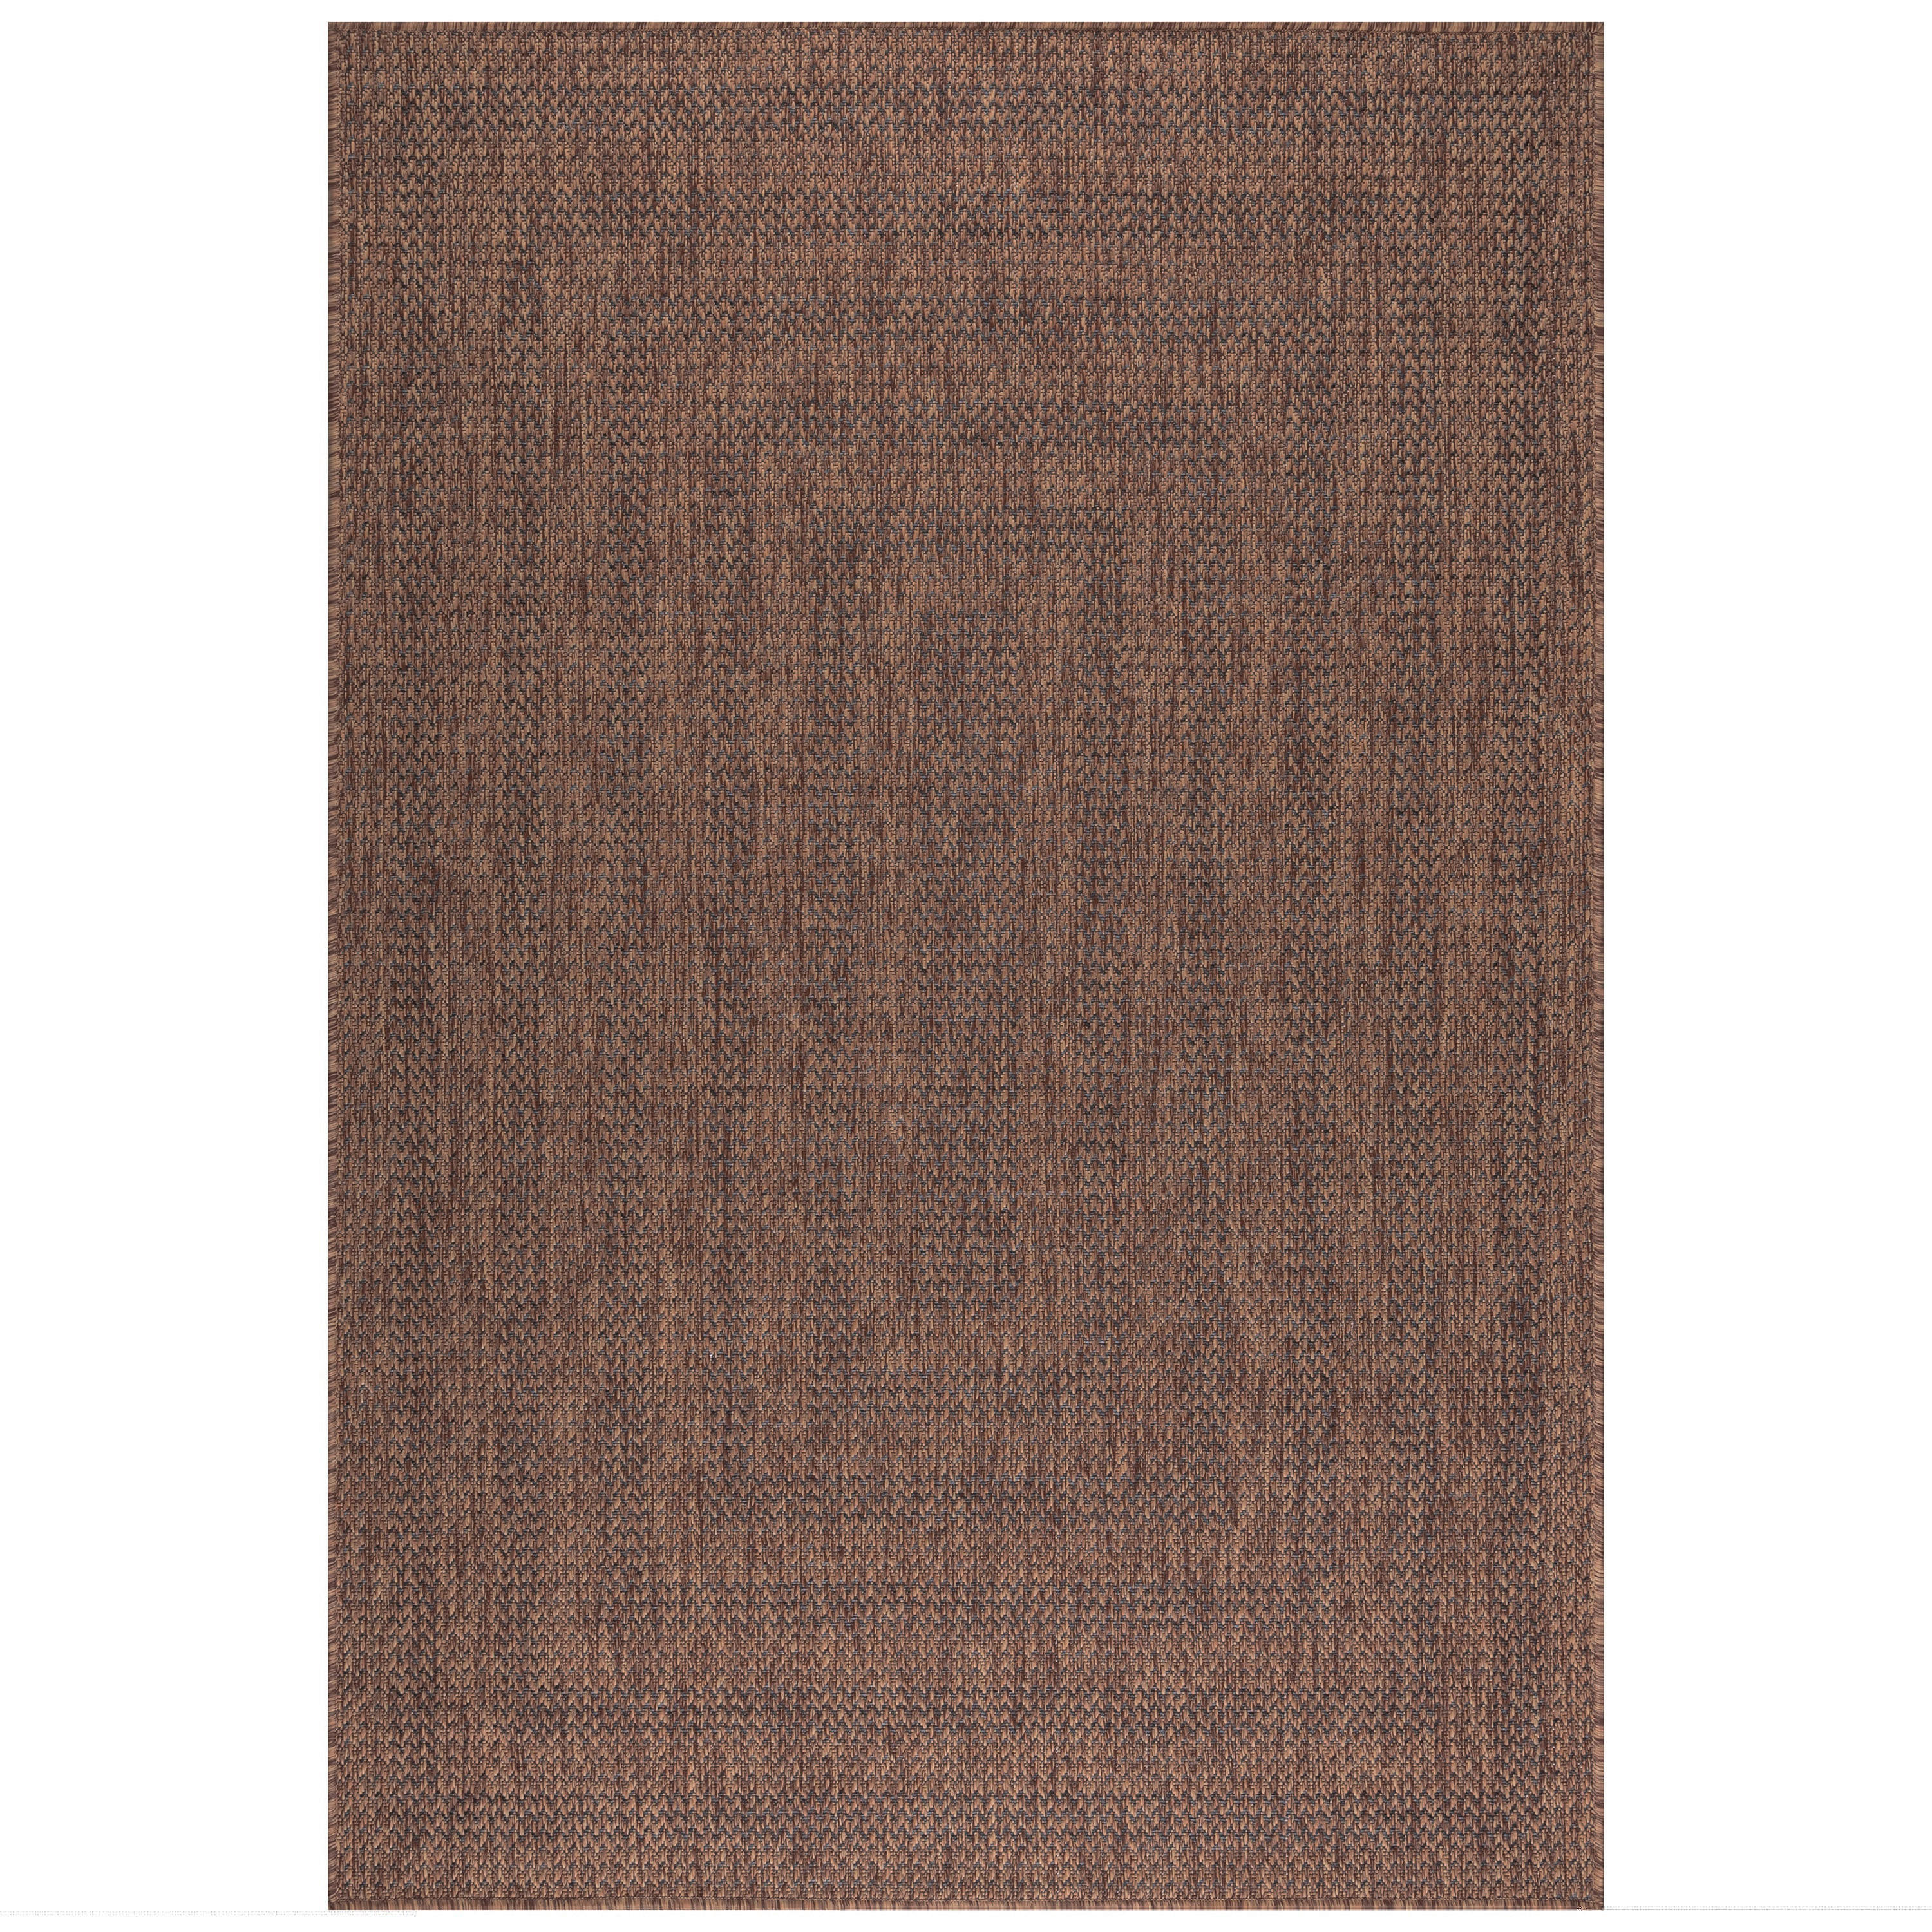 In- und Outdoorteppich 140/200 cm Zagora  - Braun/Grau, Basics, Textil (140/200cm) - Novel